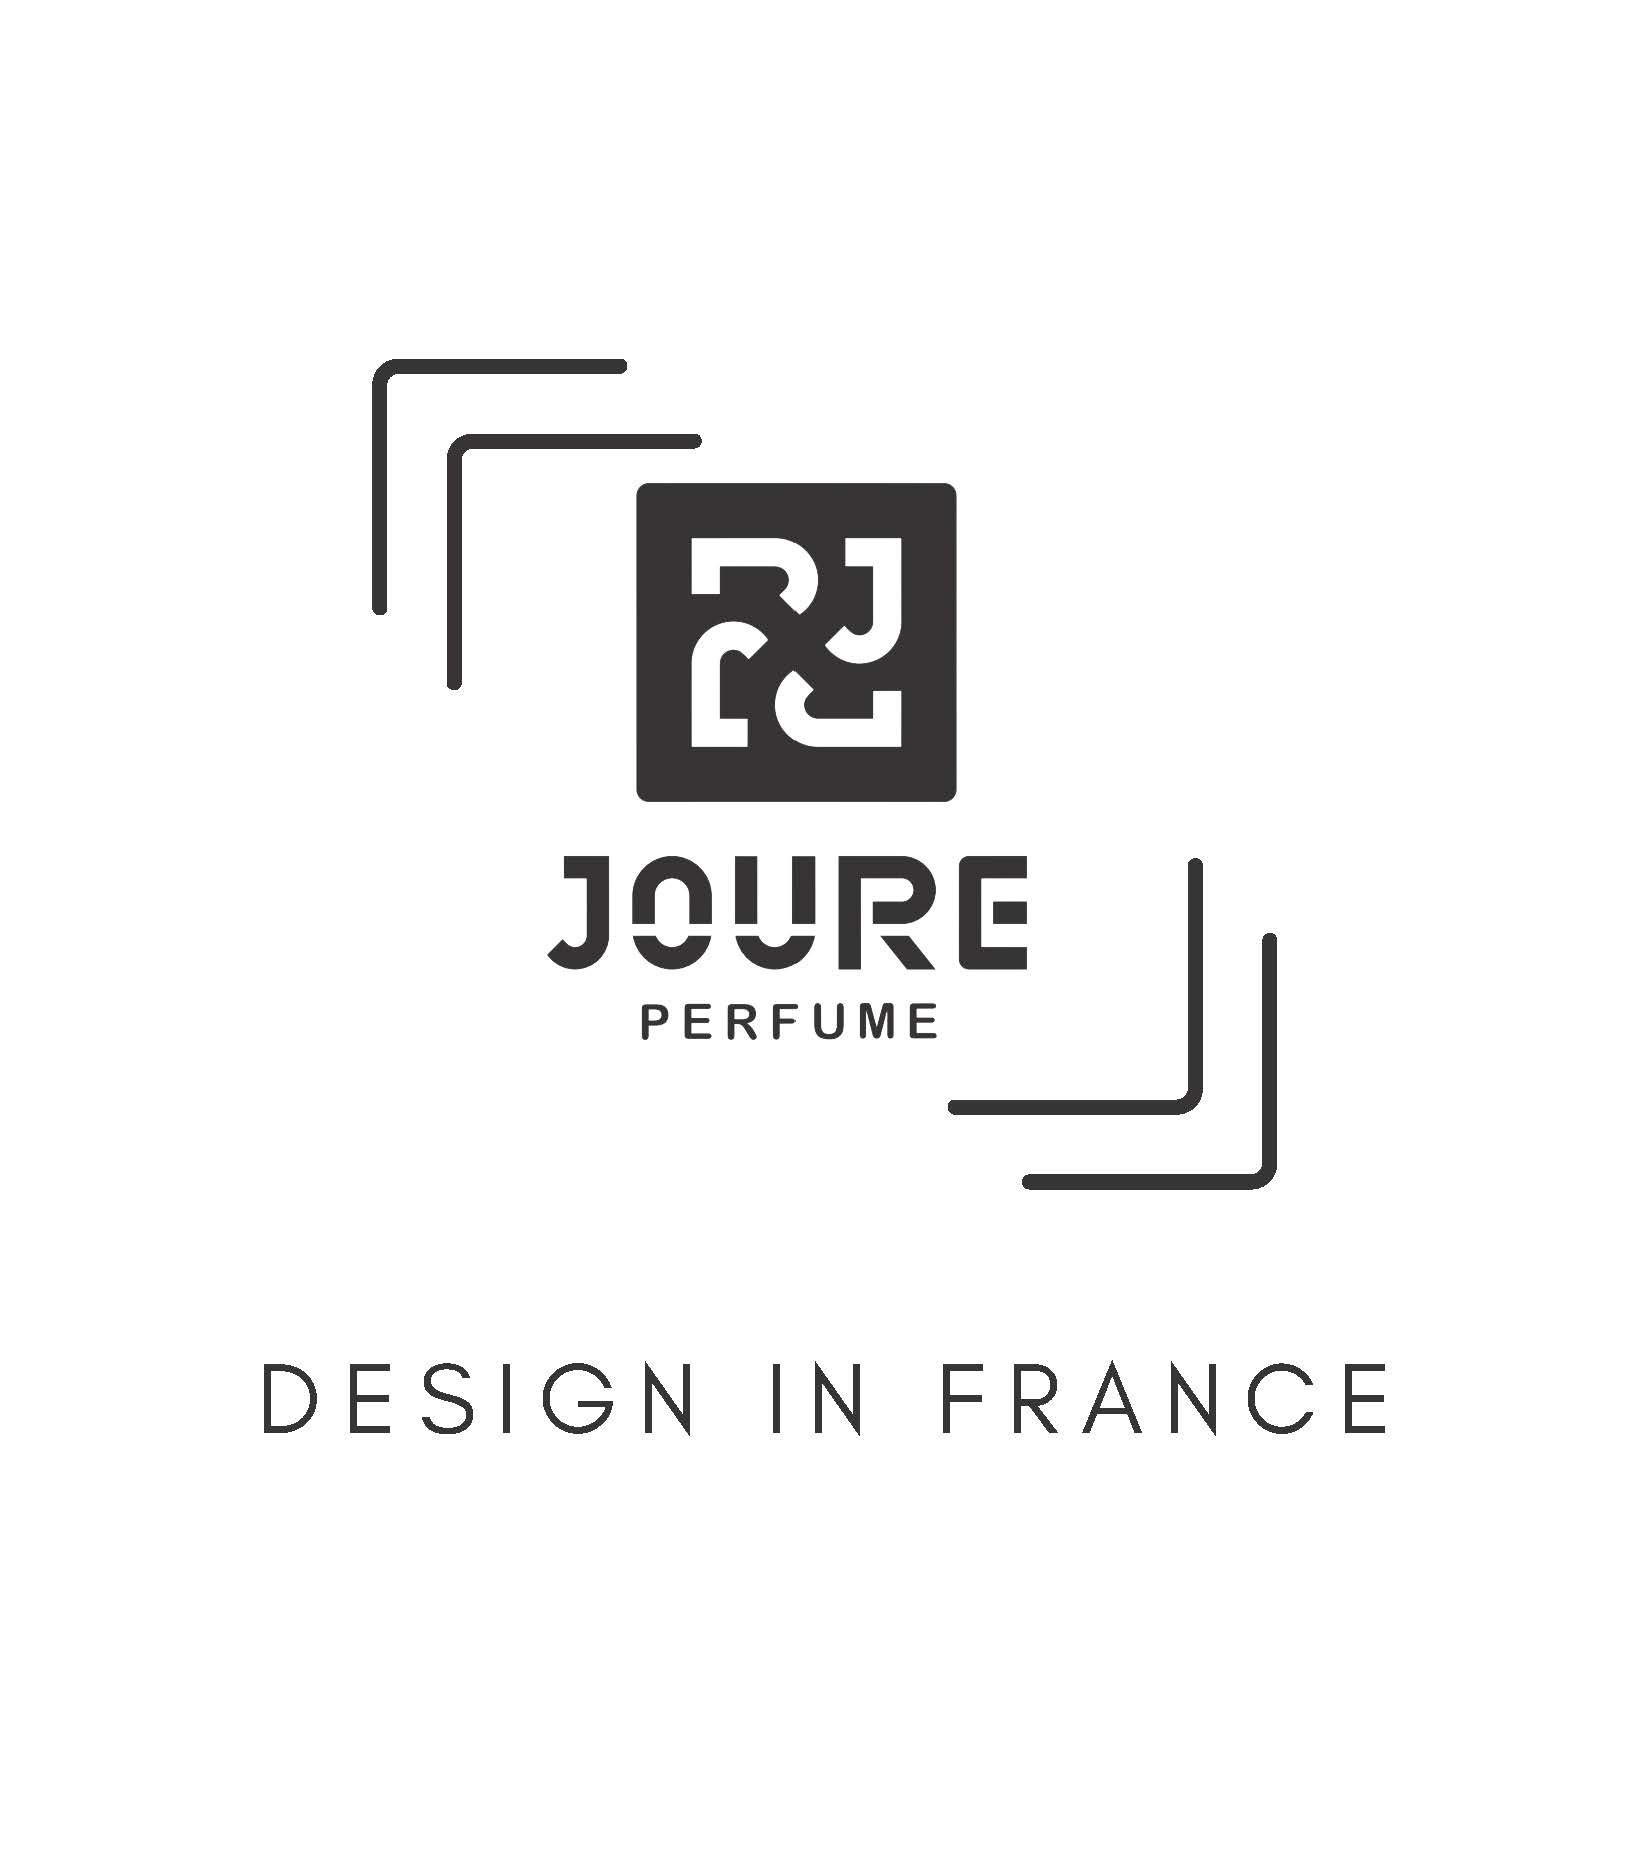 Joure perfum anasayfa üzerinde bulunan ülke bazlı logomuz